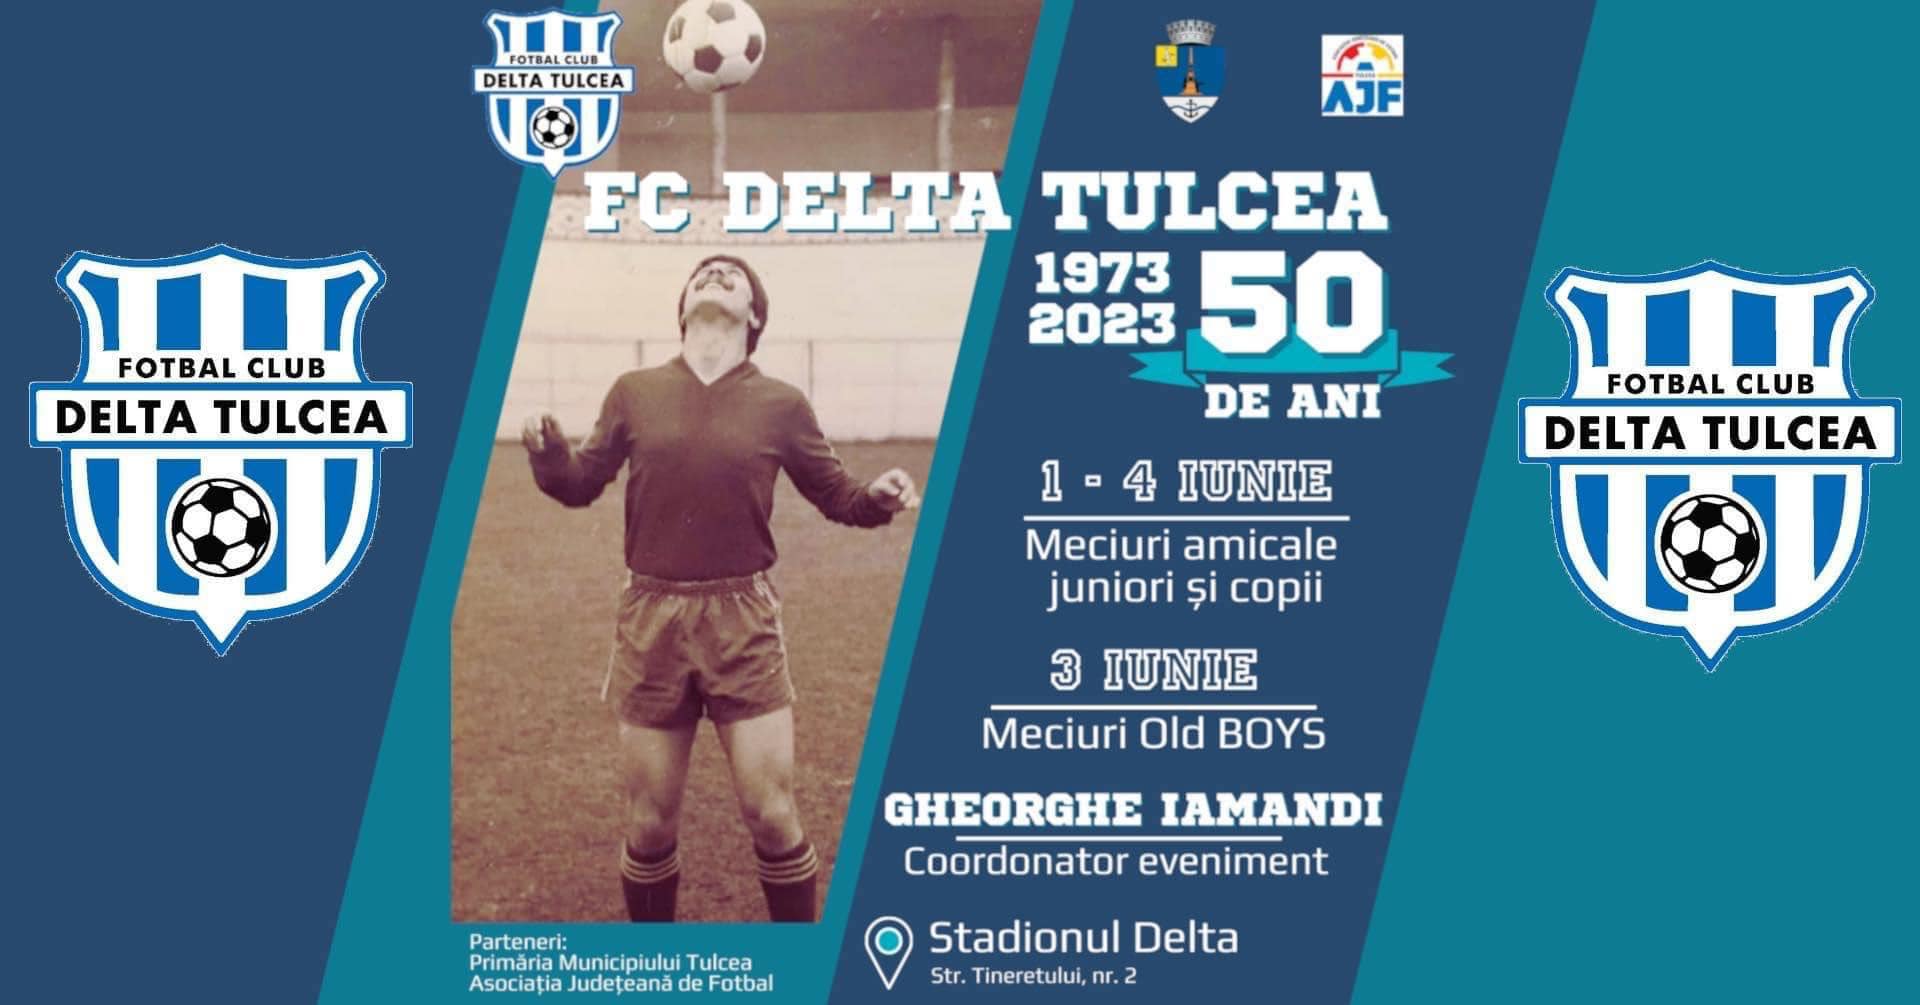 4 zile dedicate fotbalului tulcean – FC Delta Tulcea împlinește jumătate de secol